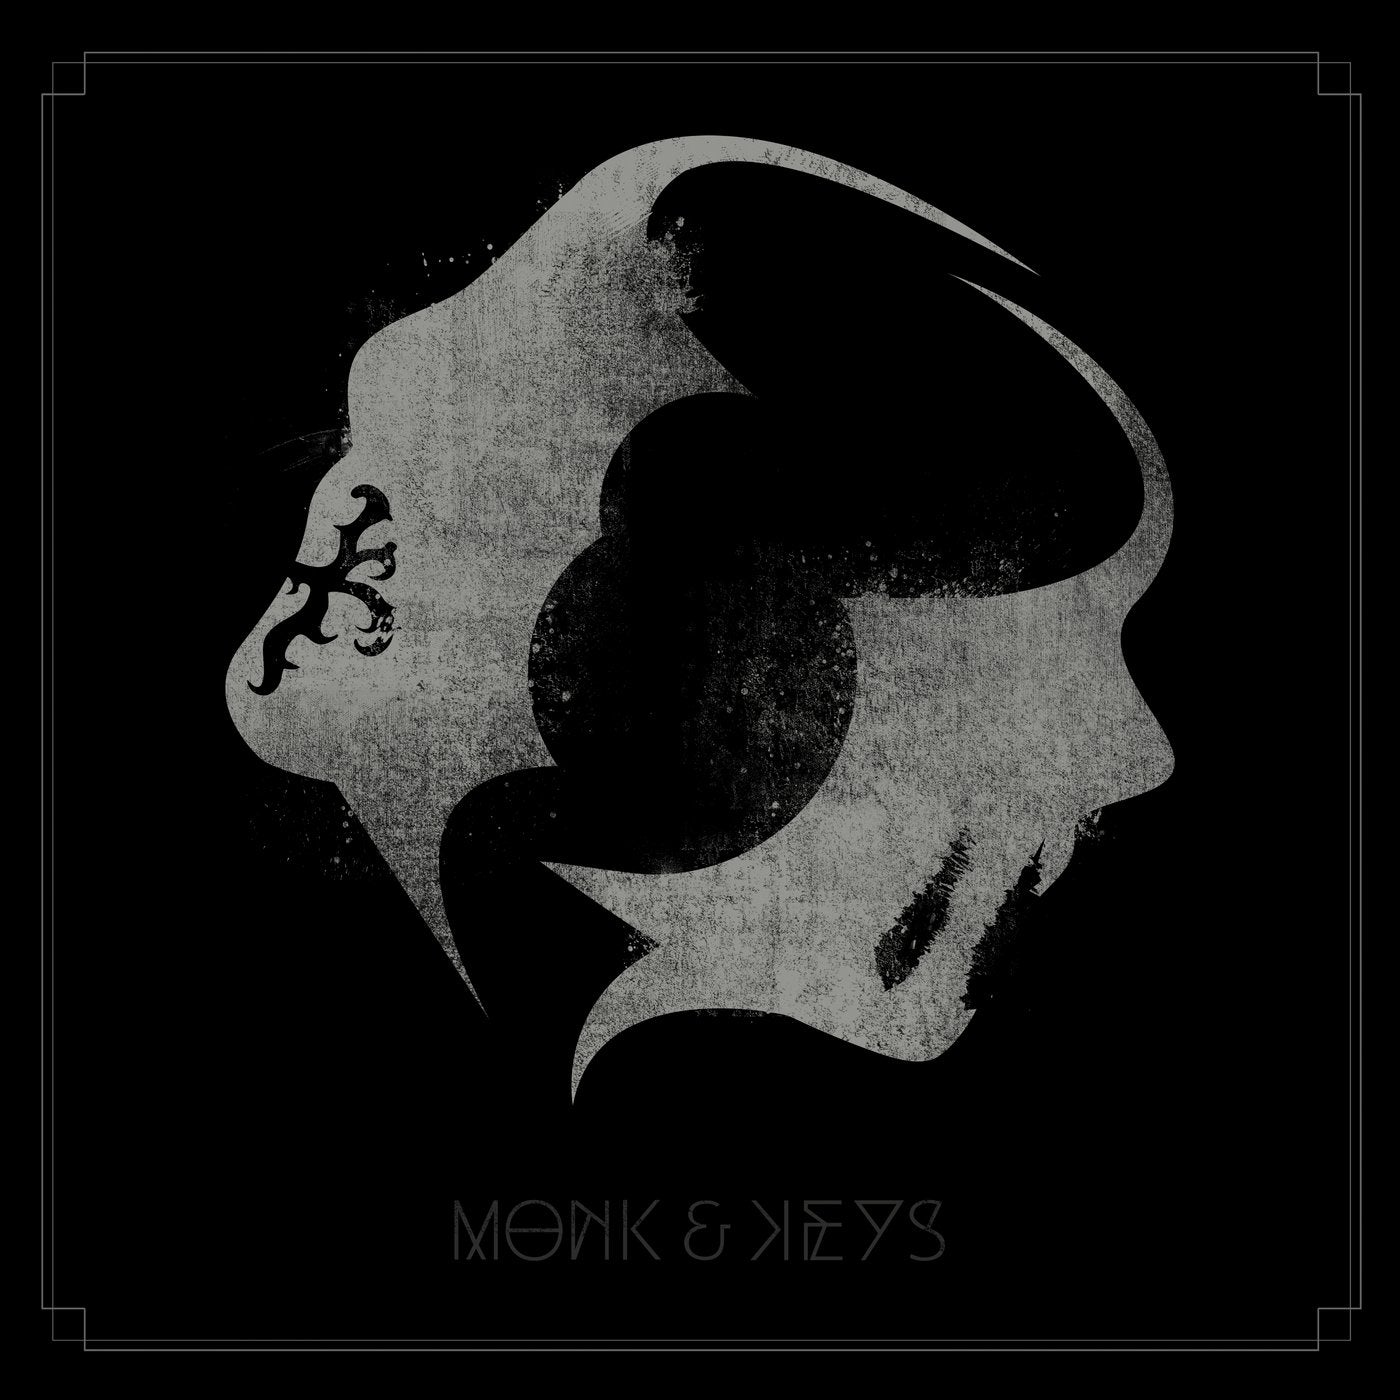 Monk & Keys